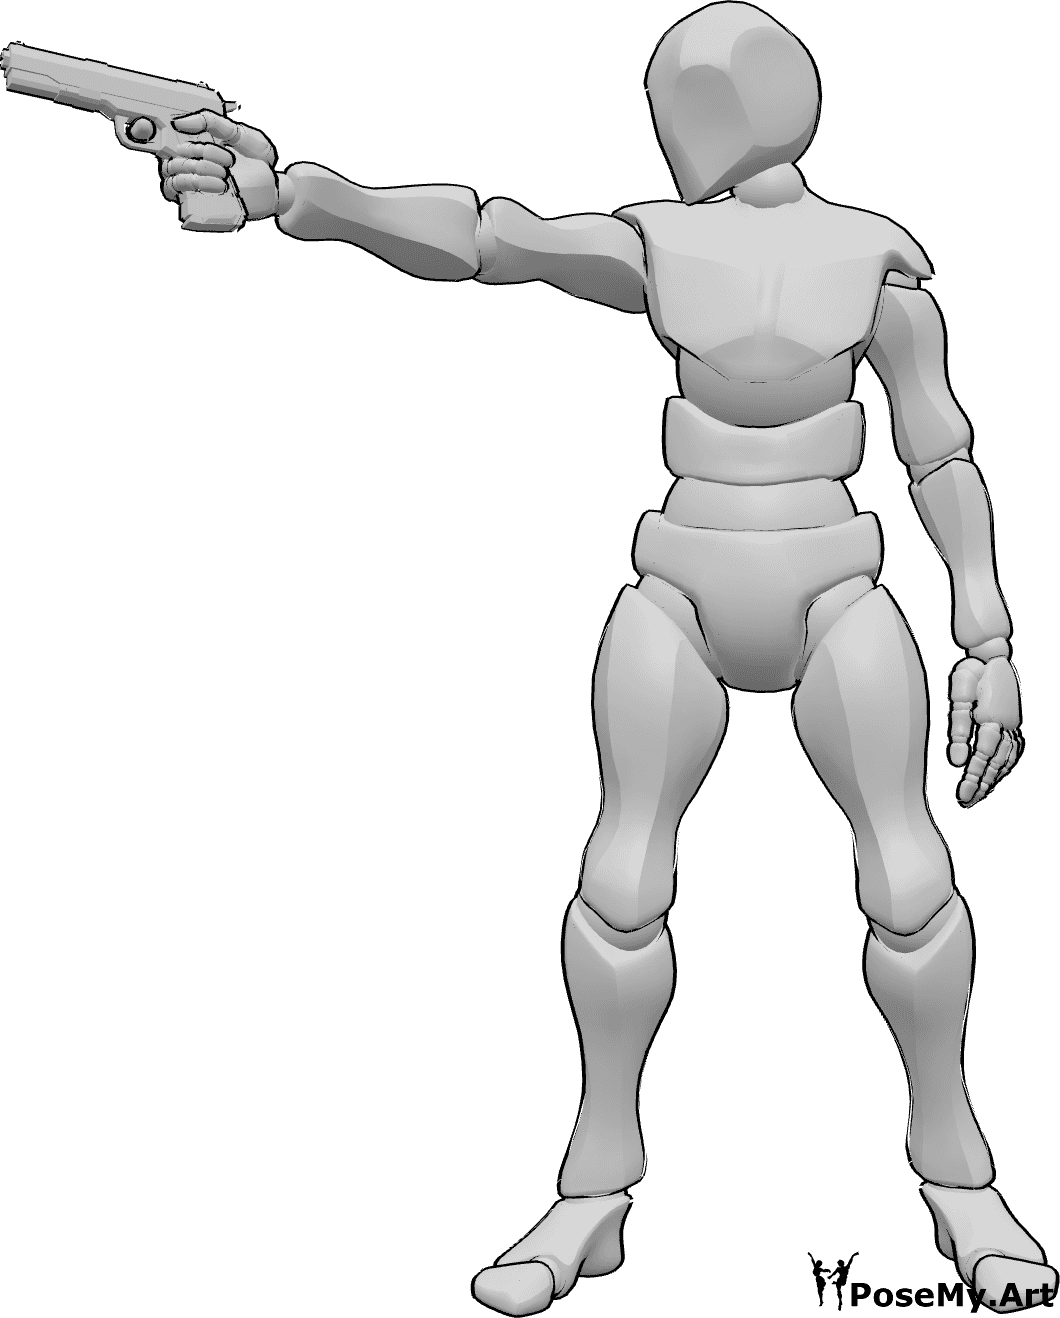 Referencia de poses- Varón apuntando con la pistola - Hombre de pie, con una pistola en la mano derecha y apuntando a la derecha.